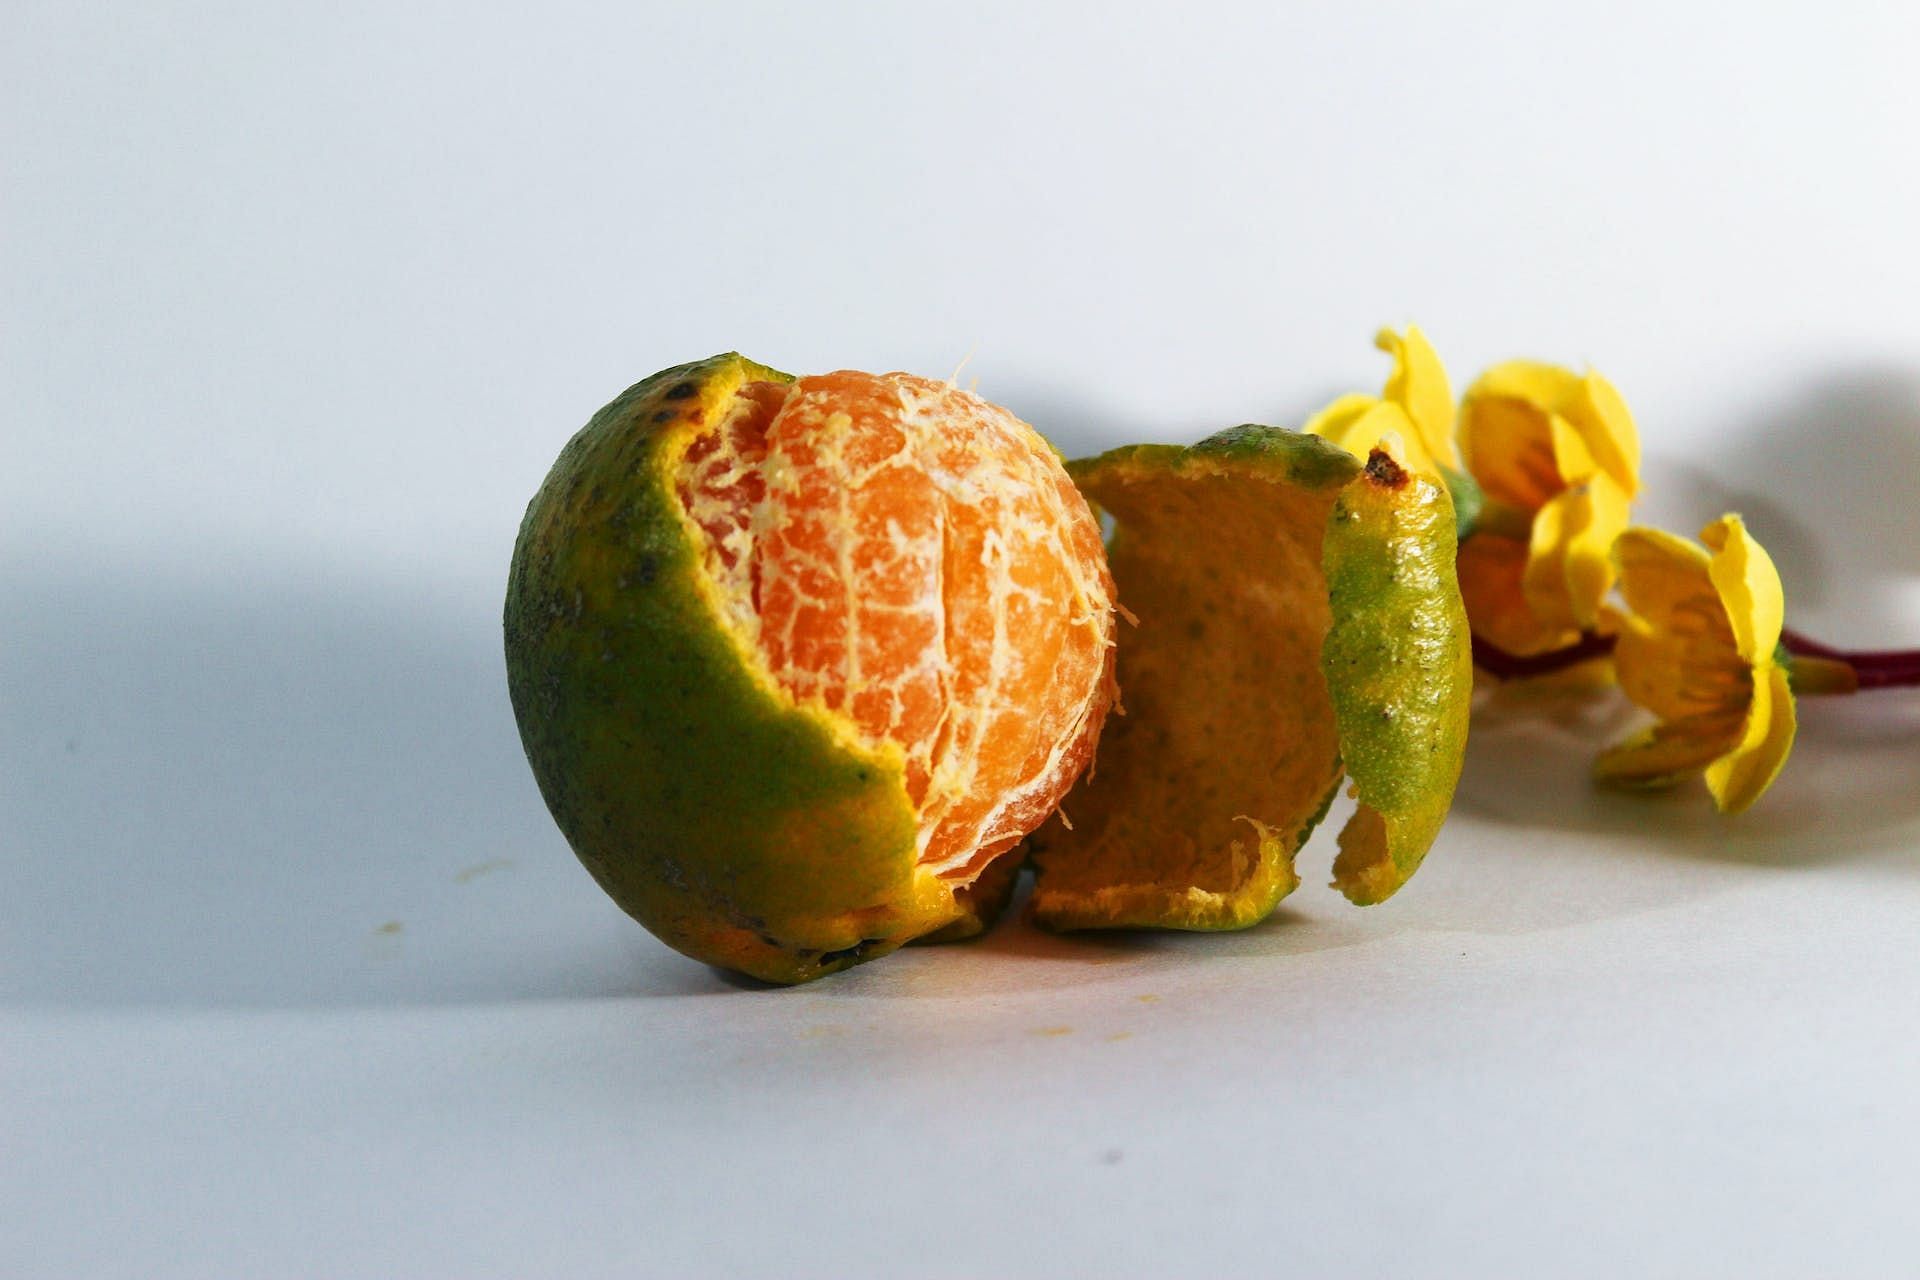 Get the benefits of orange peelings by candying them (Image via Pexels/MURALI DHARAN)